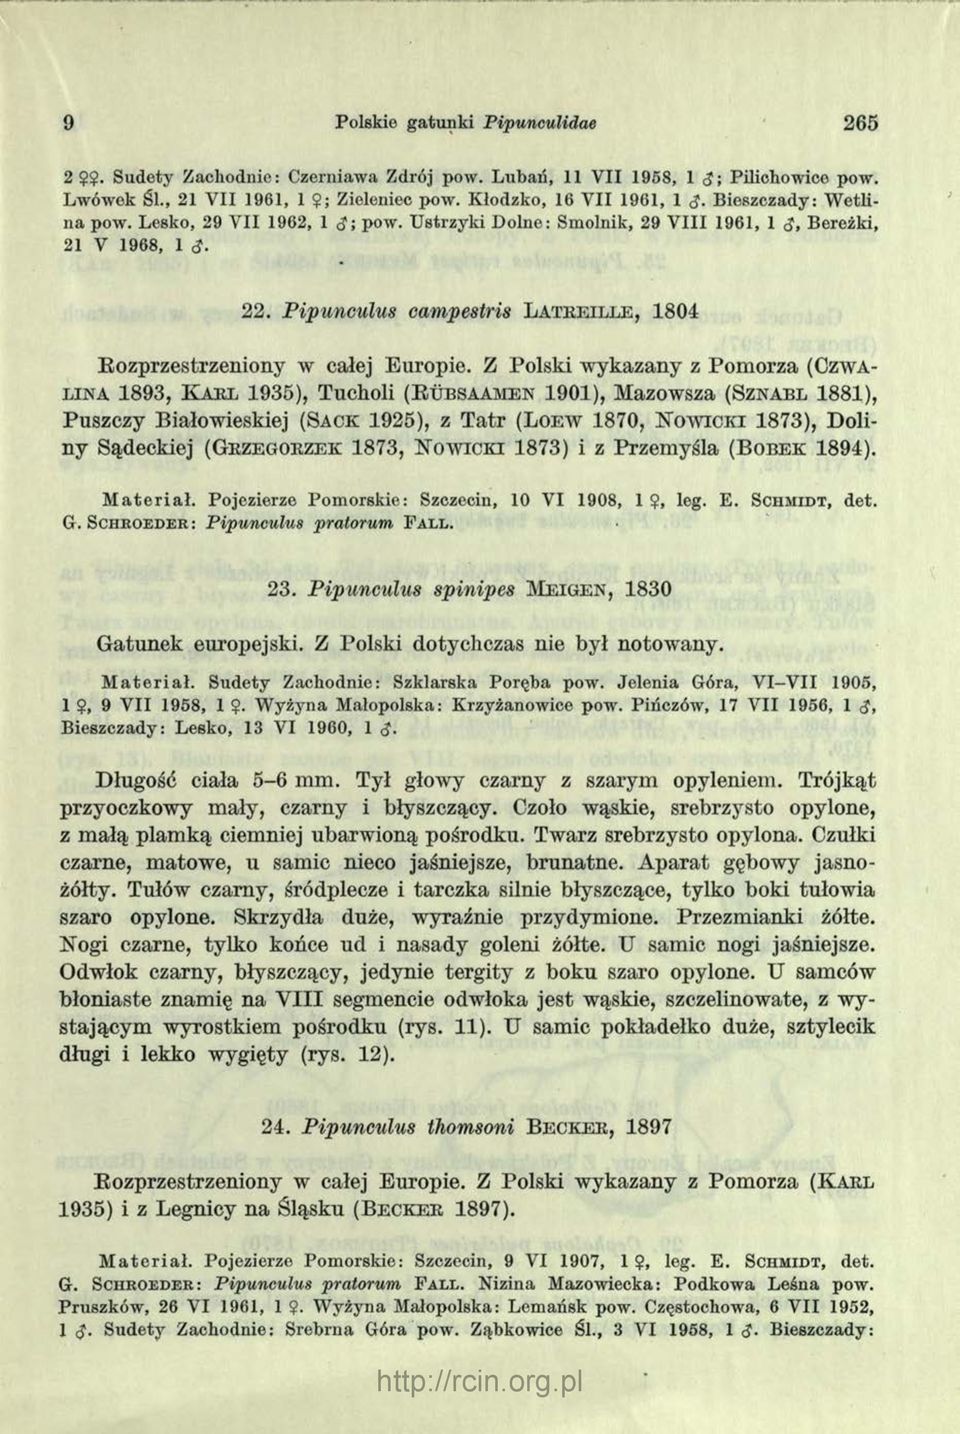 Pipunculus campestris La t r e il le, 1804 Rozprzestrzeniony w całej Europie.